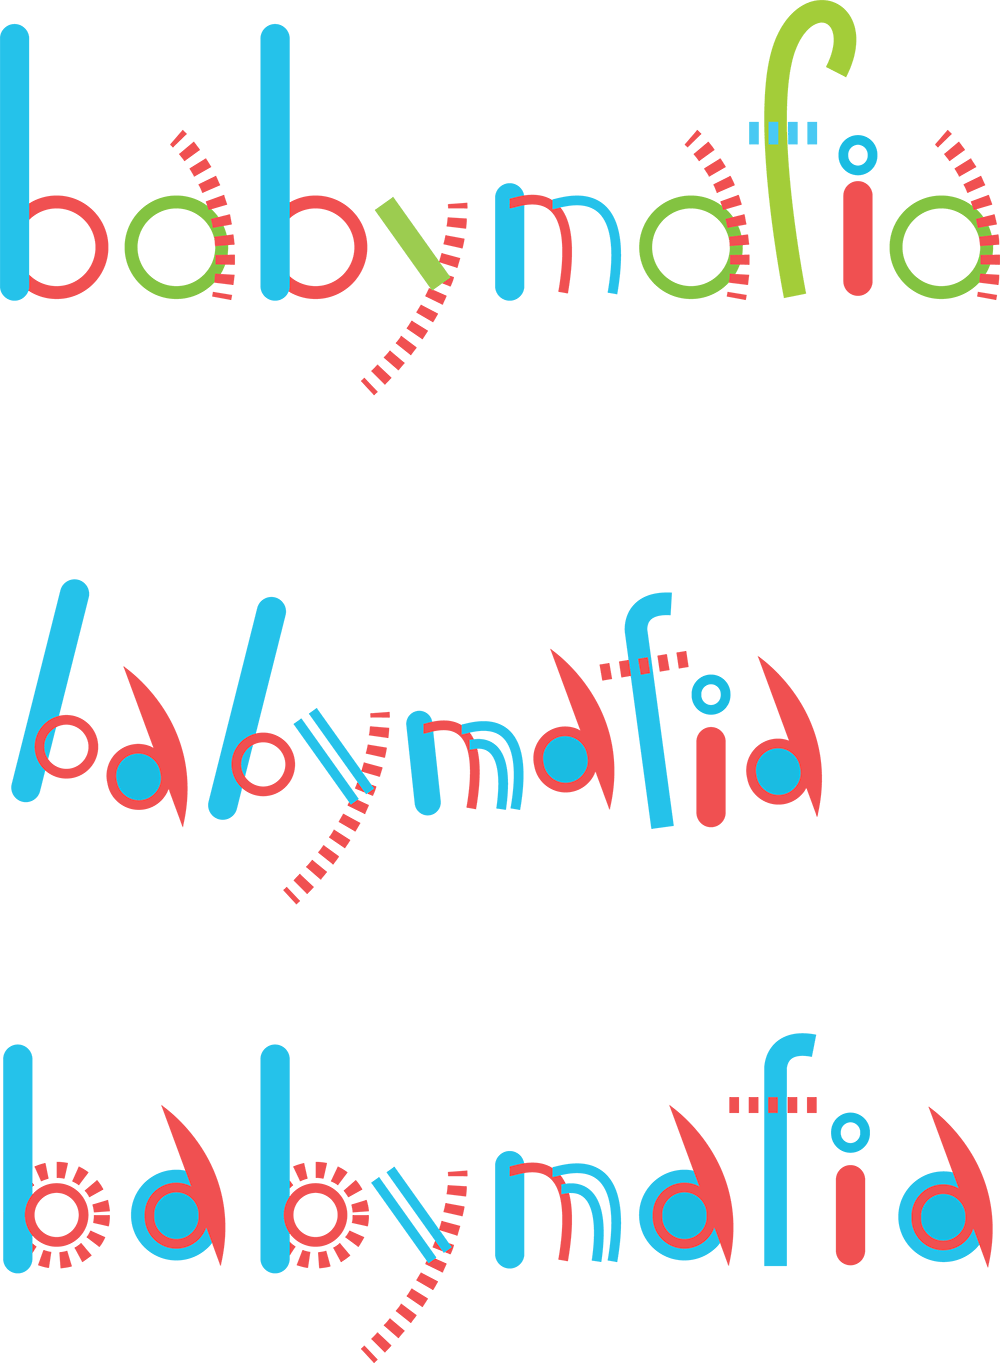 babymafia process 10